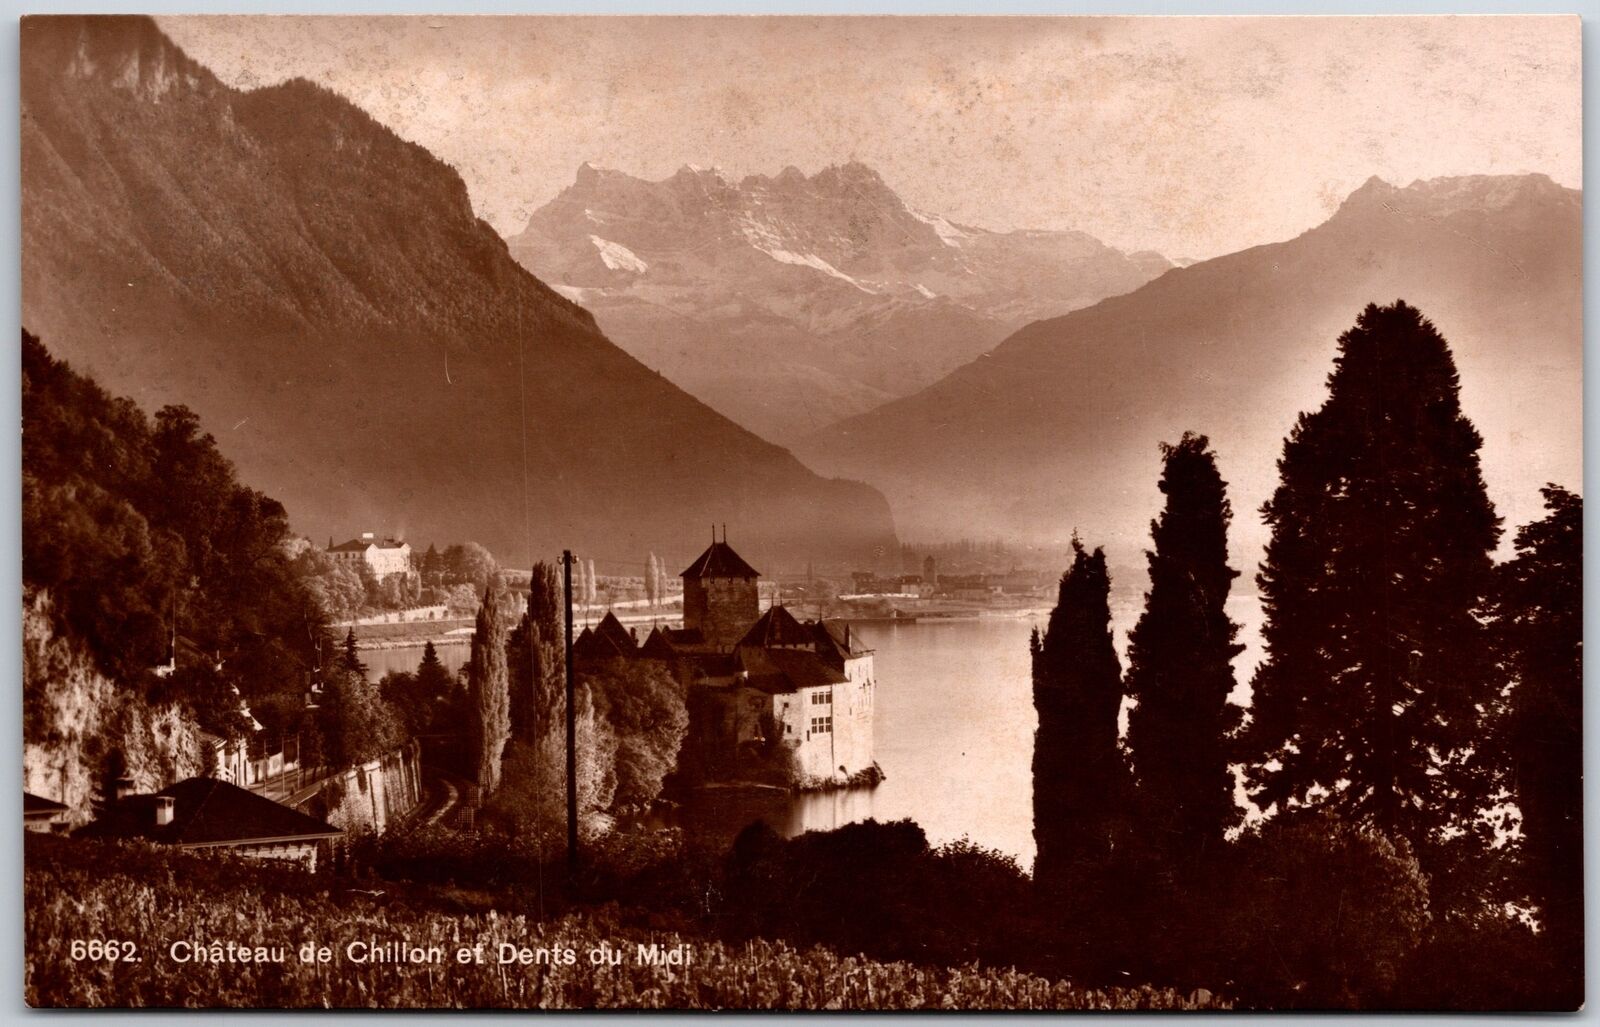 Chateau de Chillon et Dents du Midi Switzerland Mountains In Distance Postcard